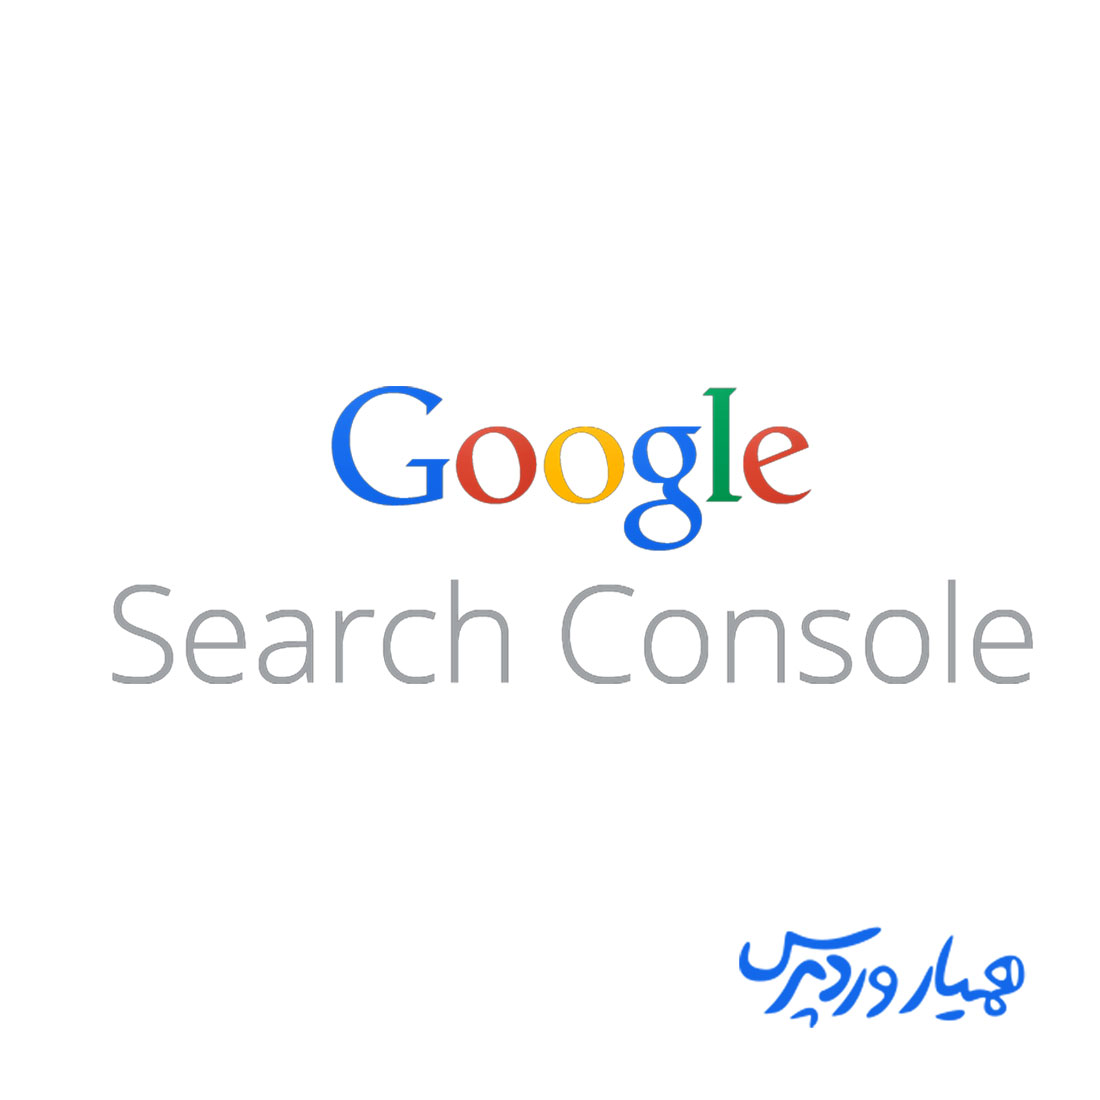 Google com search console. Google search Console. Google search Console логотип. Гугл Серч. Google логотип Кривой.